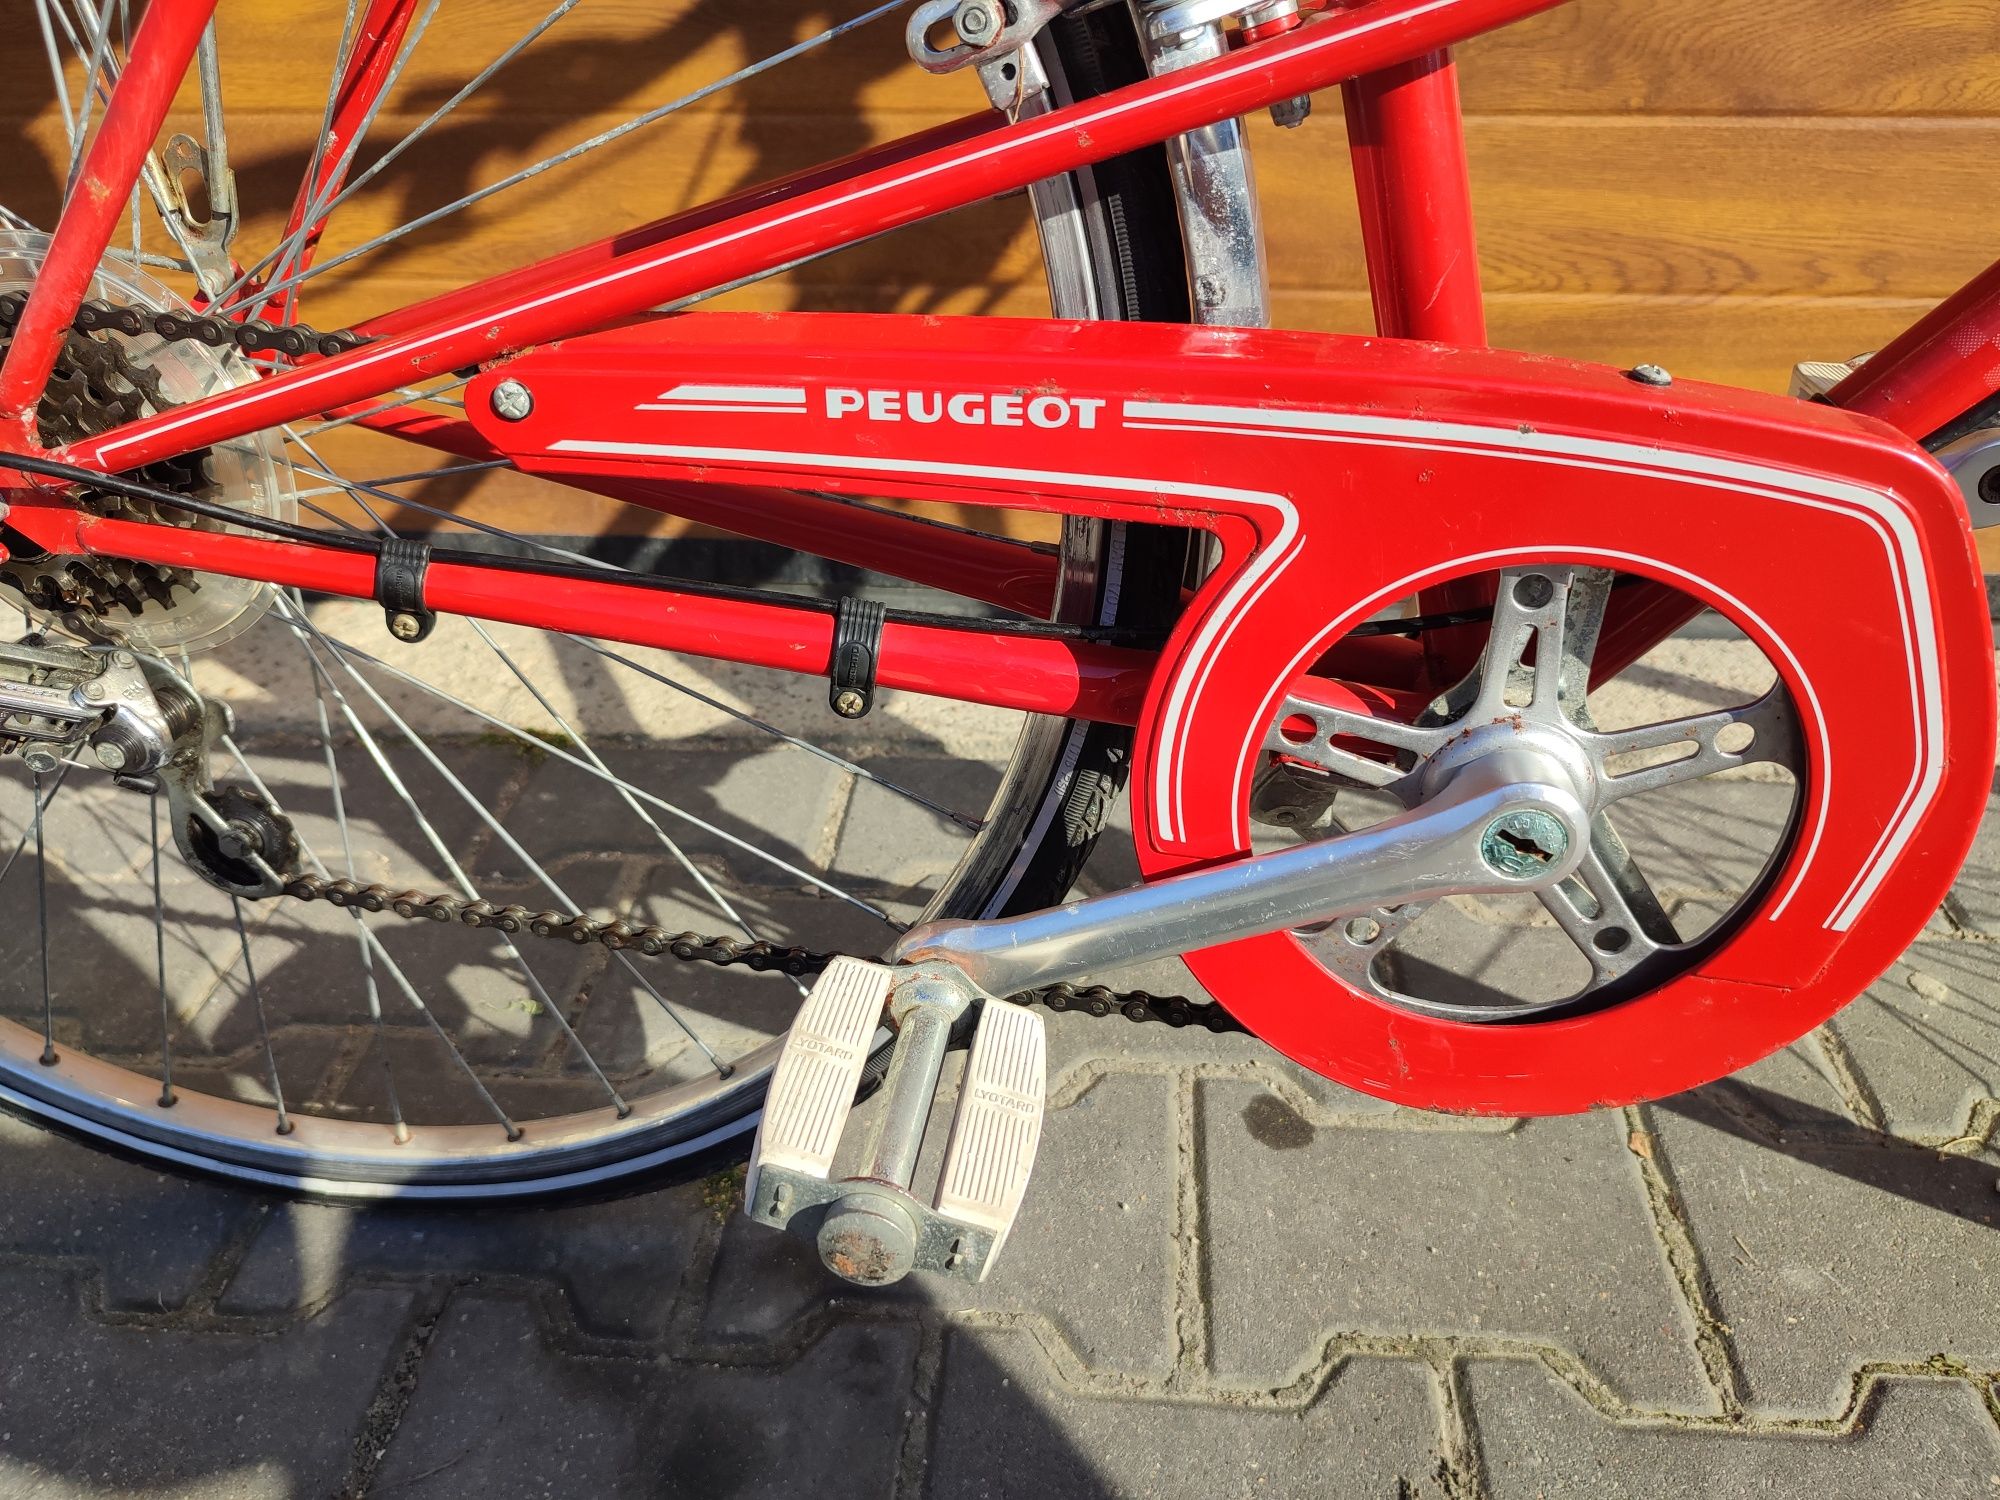 Sprzedam piękny klasyczny rower Peugeot Nice Grodzisk Mazowiecki • OLX.pl